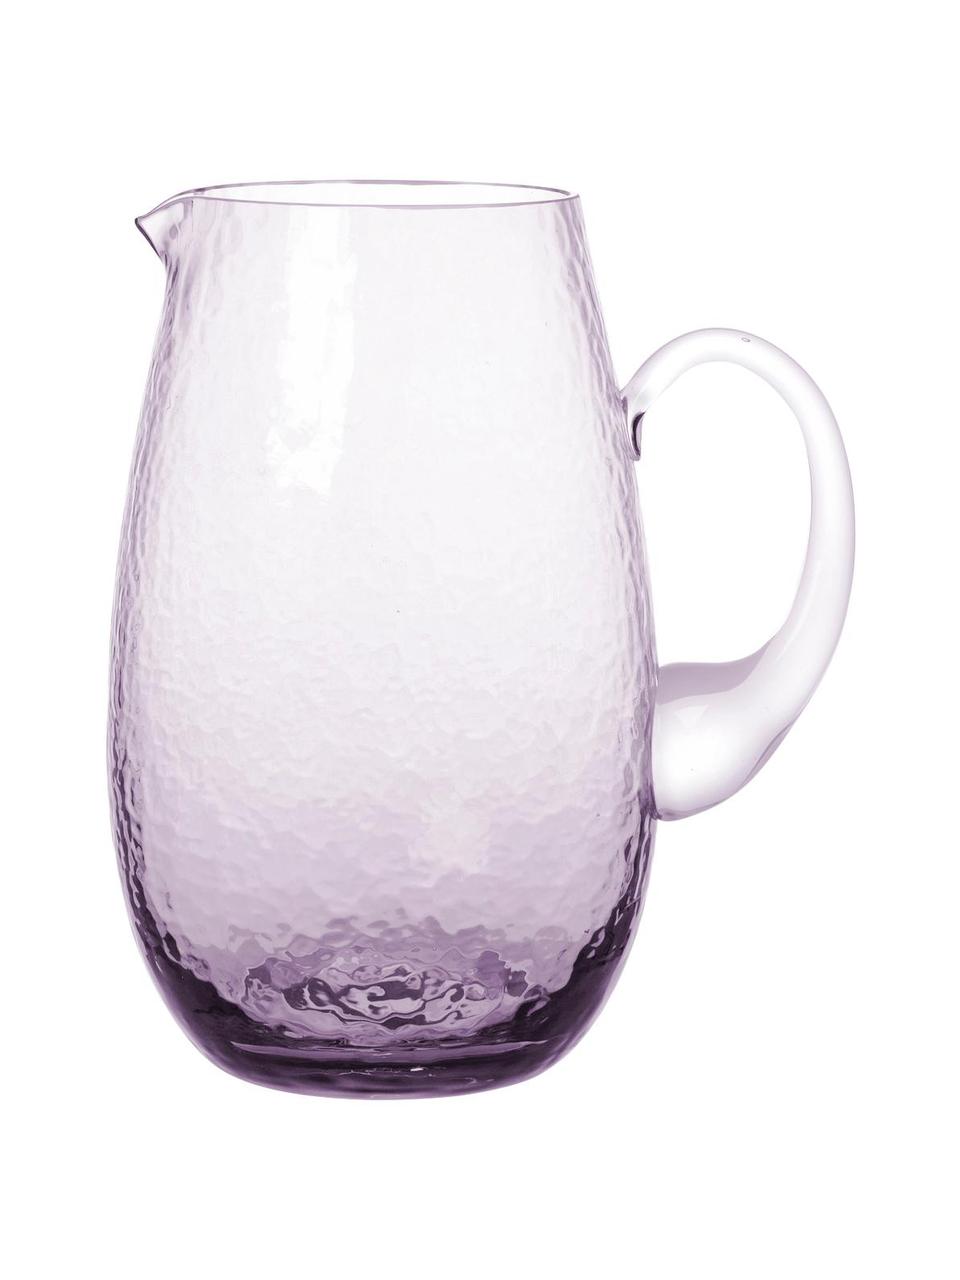 Brocca in vetro soffiato con supertifice martellata Hammered, 2 L, Vetro soffiato, Viola trasparente, Ø 14 x Alt. 22 cm, 2 L